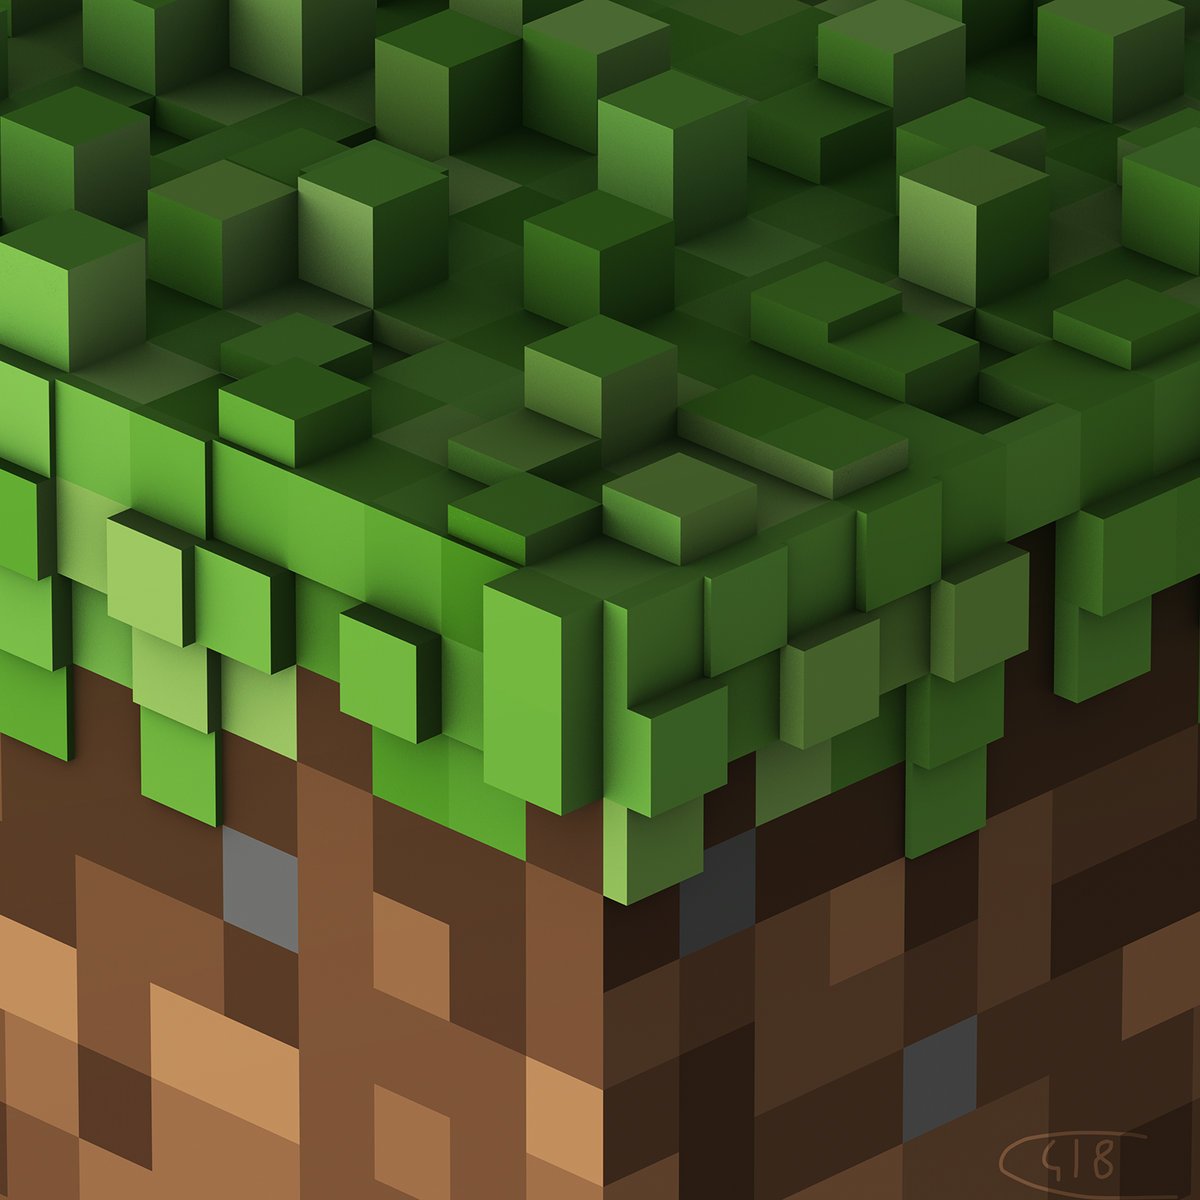 C418 "Minecraft Volume Alpha" [Green Vinyl]